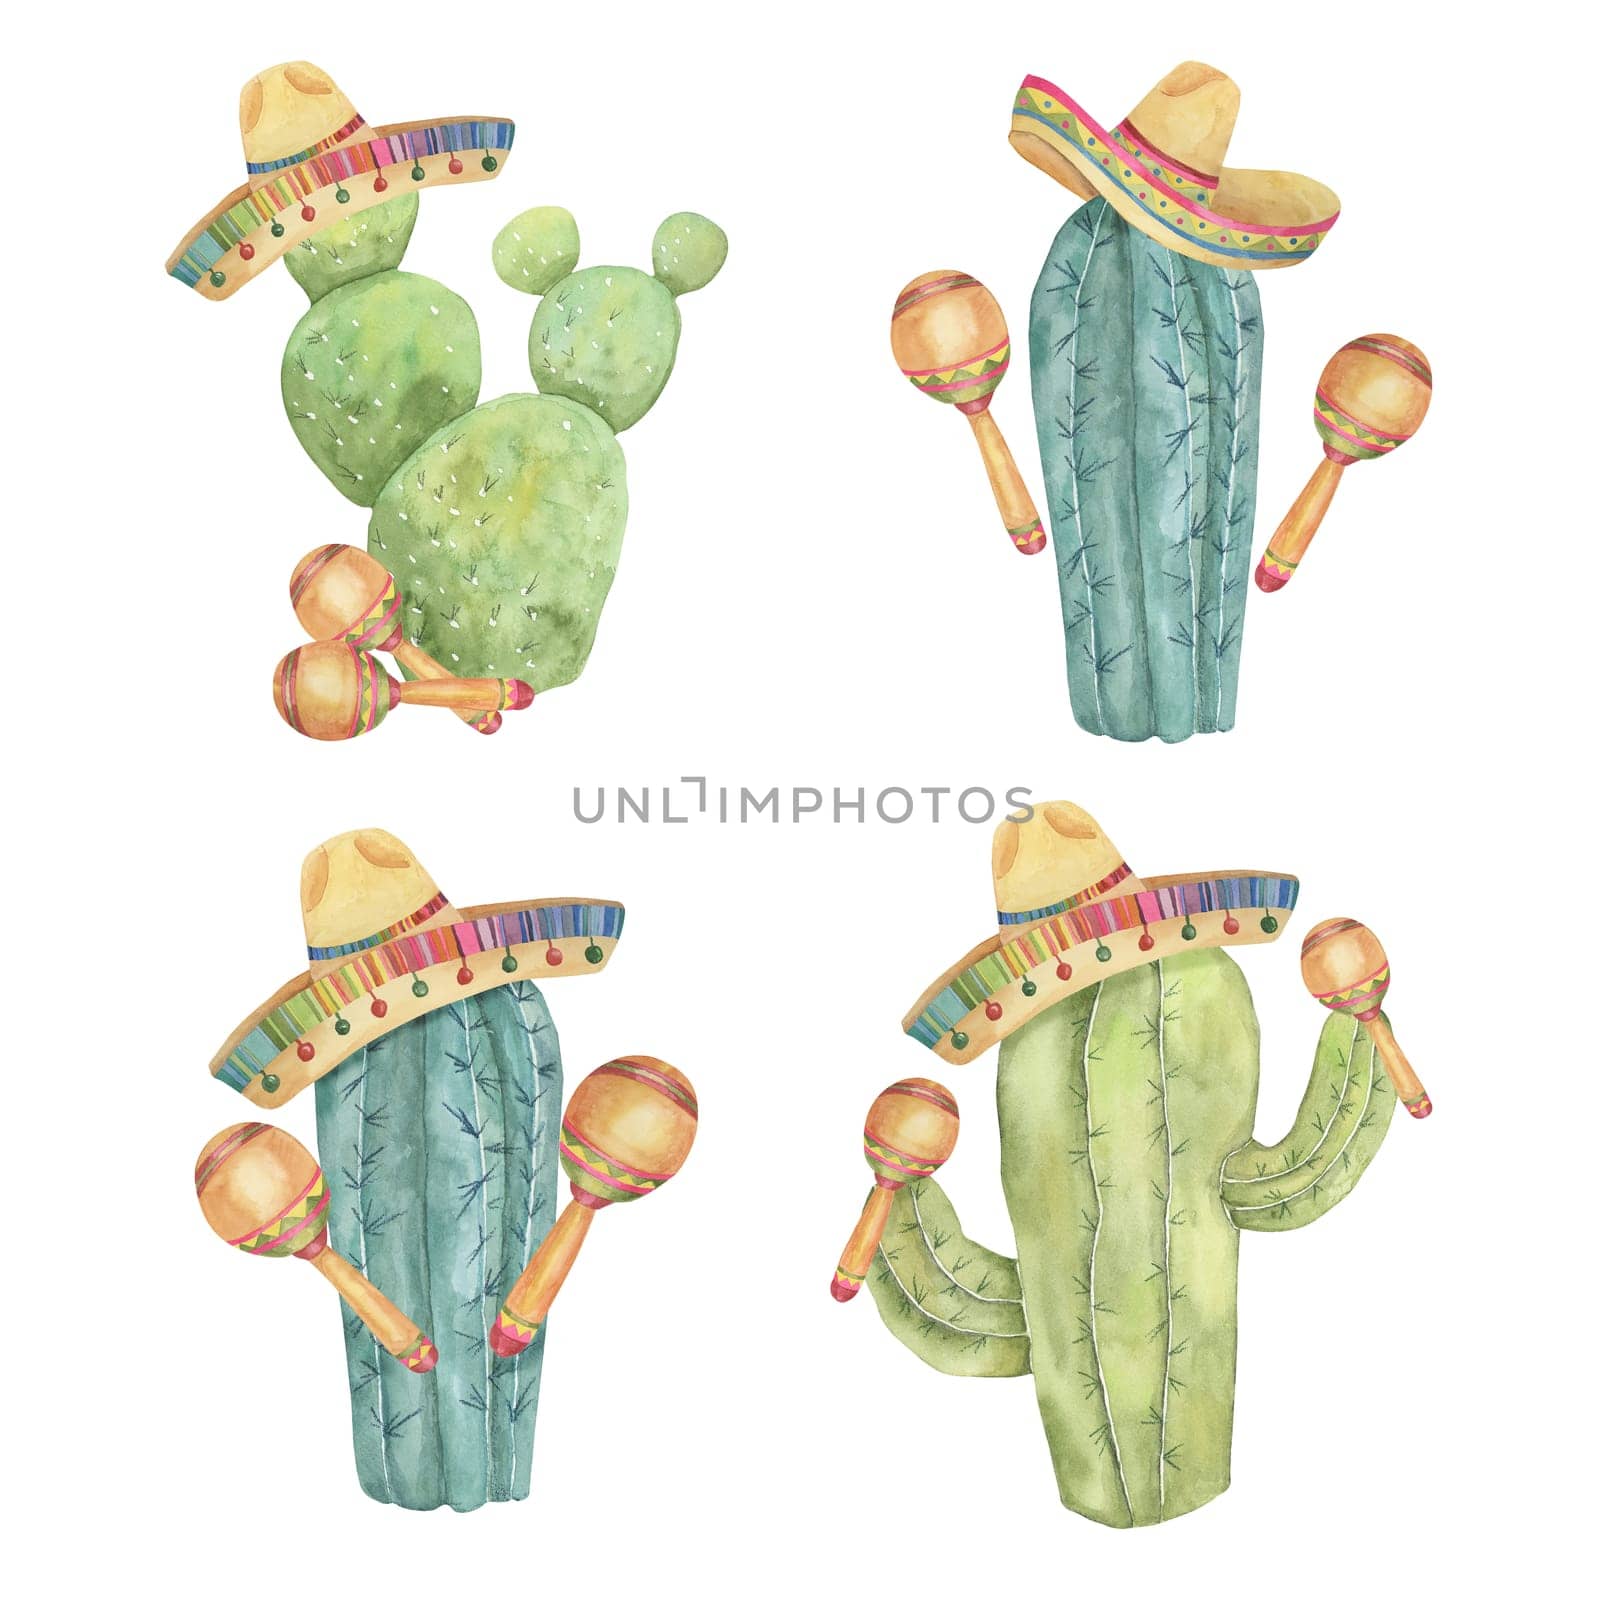 Cinco de Mayo funny cacti in watercolor by Fofito